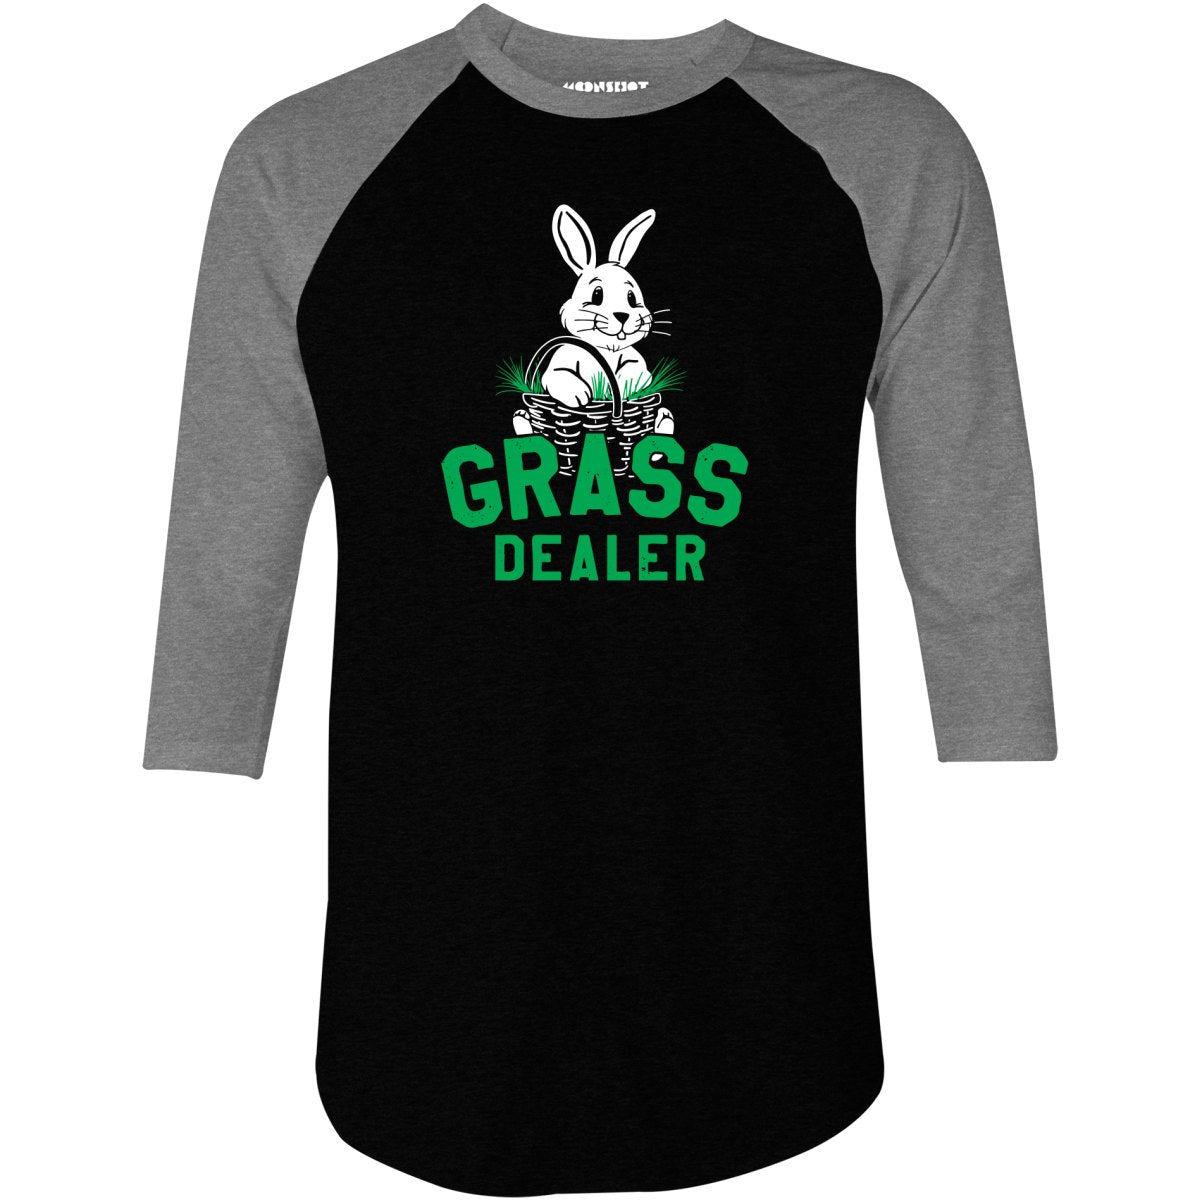 Grass Dealer - 3/4 Sleeve Raglan T-Shirt